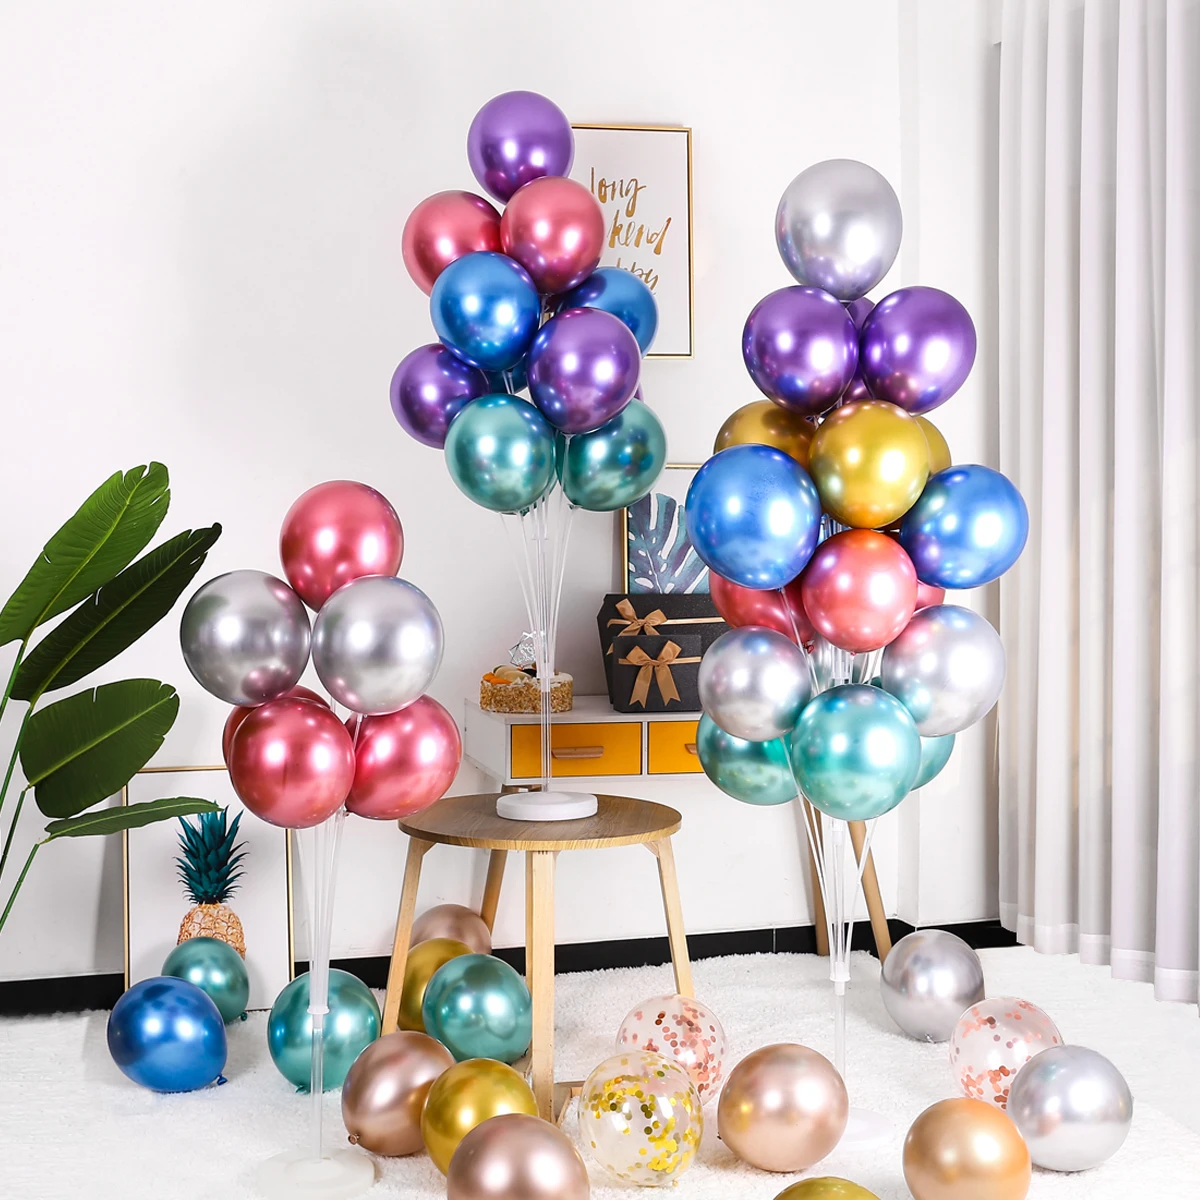 Подставка для воздушных шаров планшетофон оформления детского дня рождения